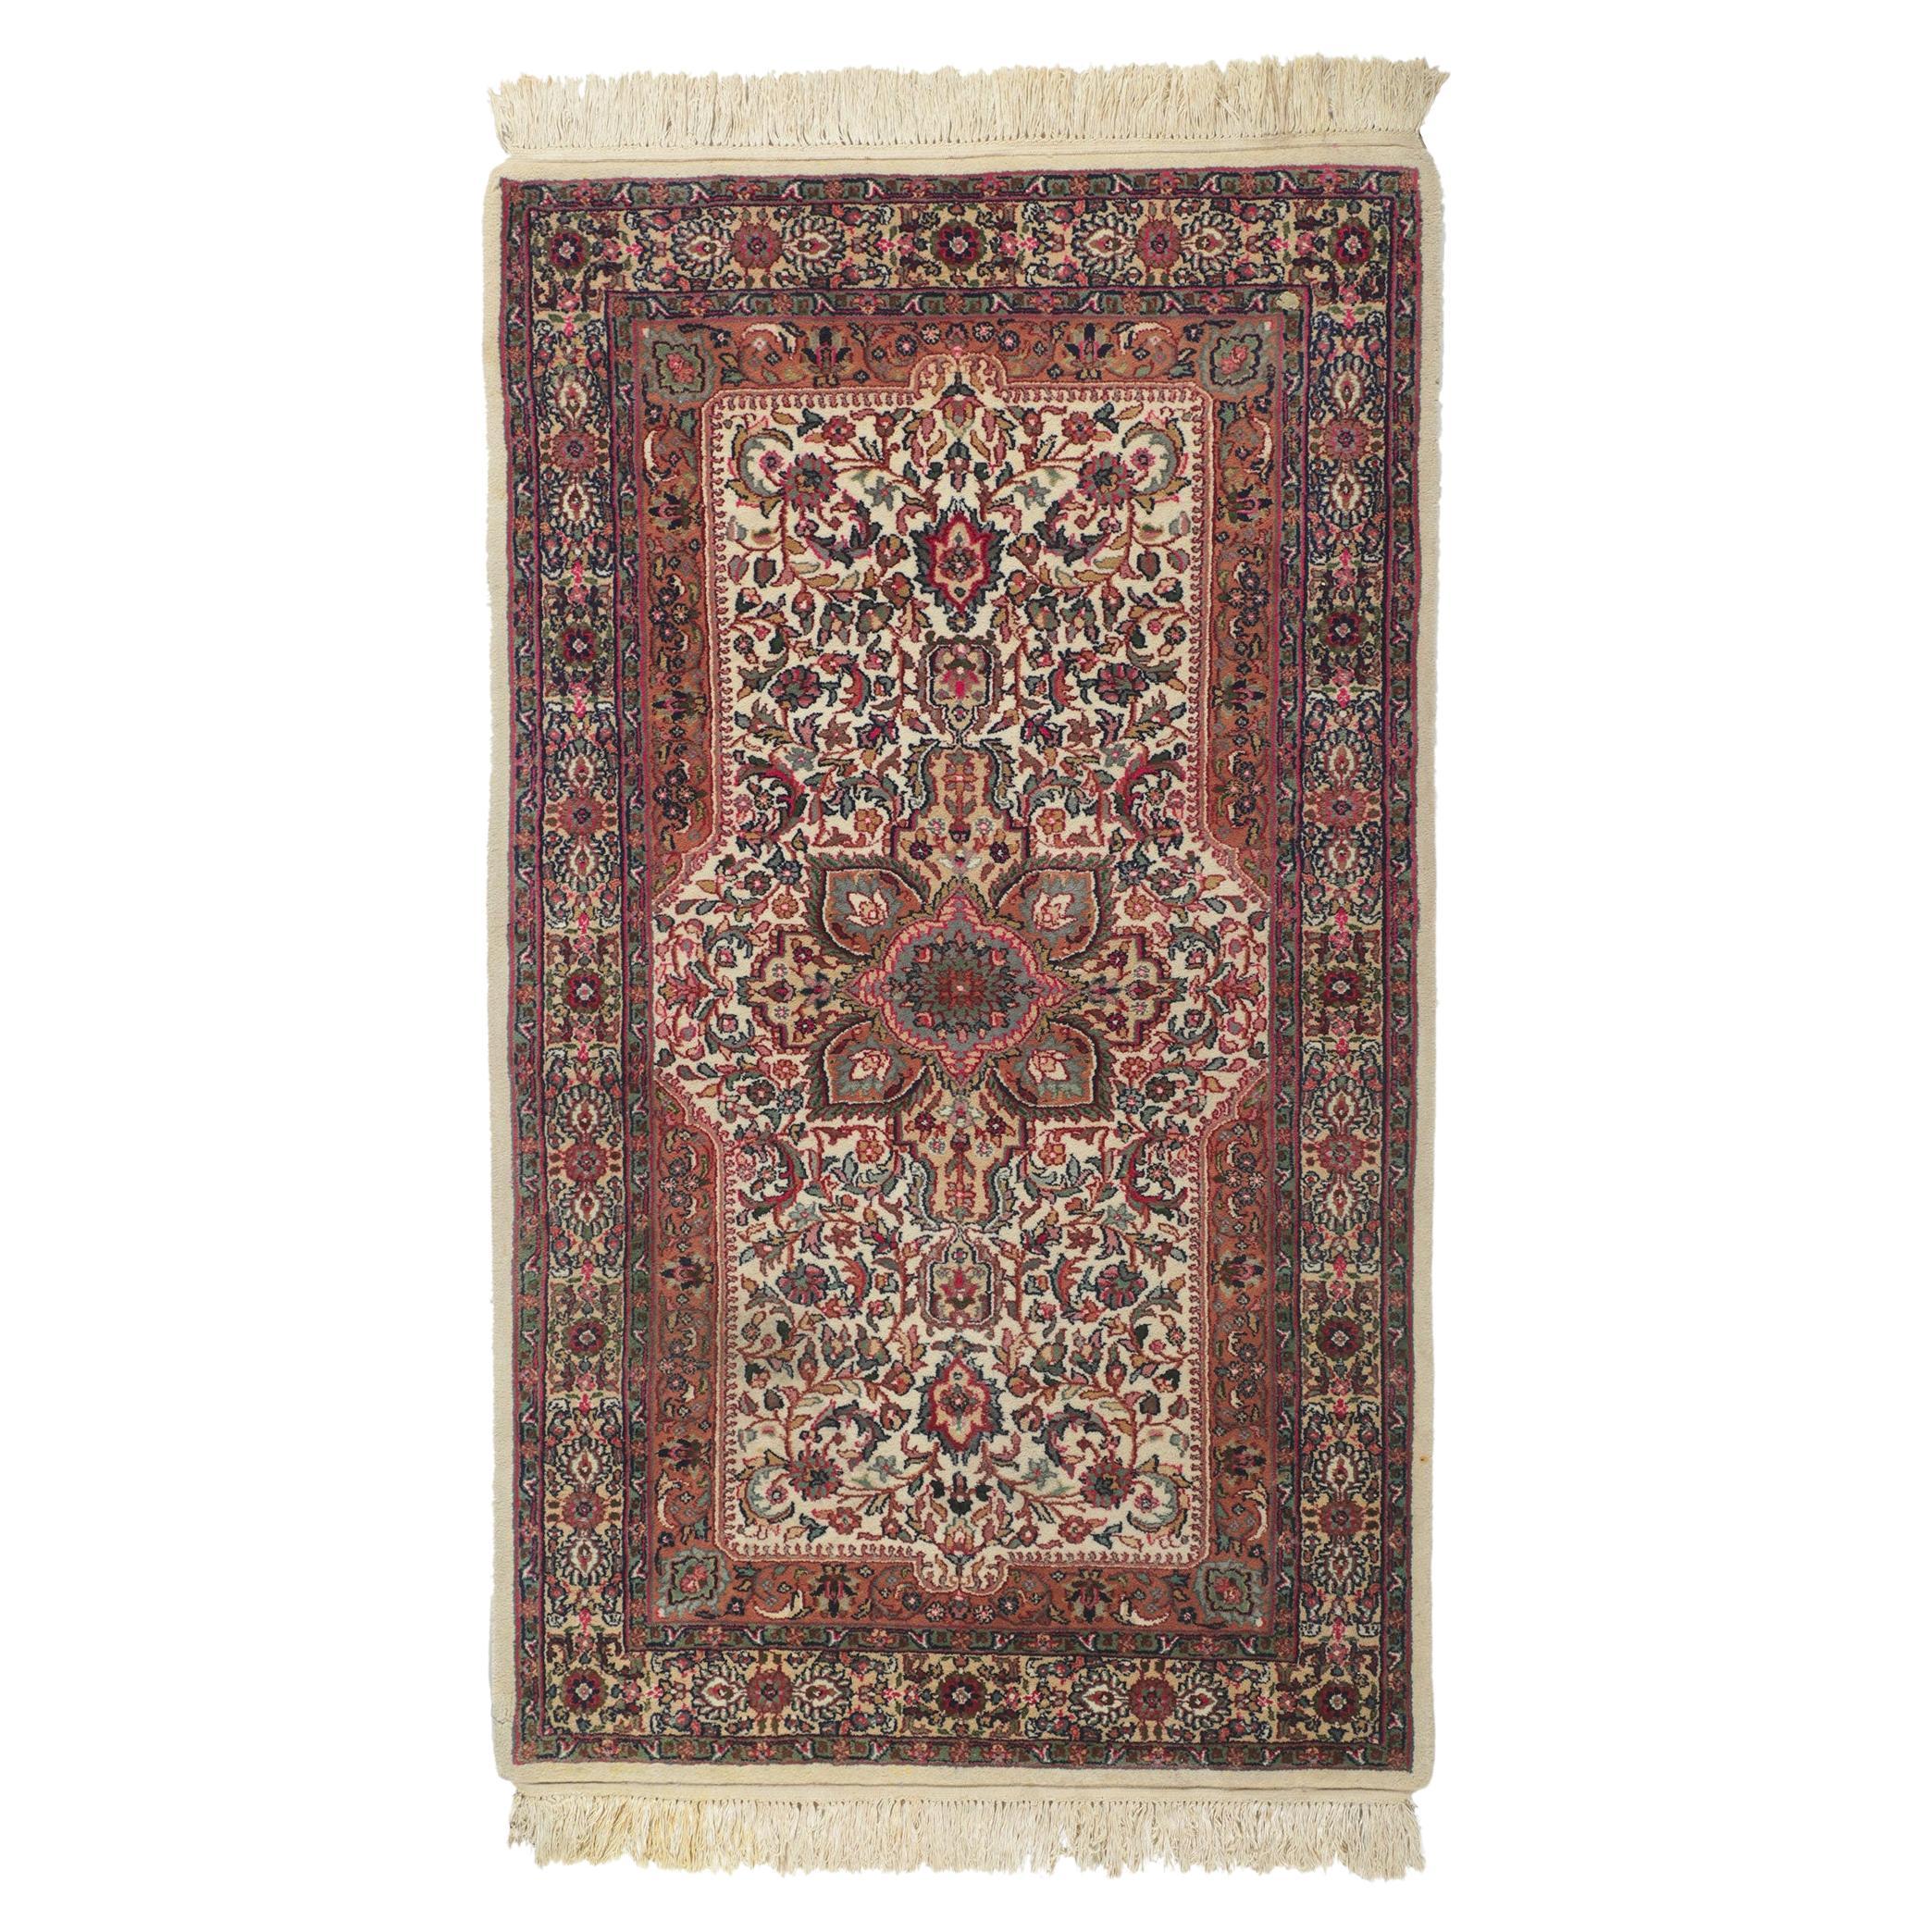 Chinesischer Kerman-Teppich im Vintage-Look, zeitloser Stil trifft auf traditionelle Sensibilität